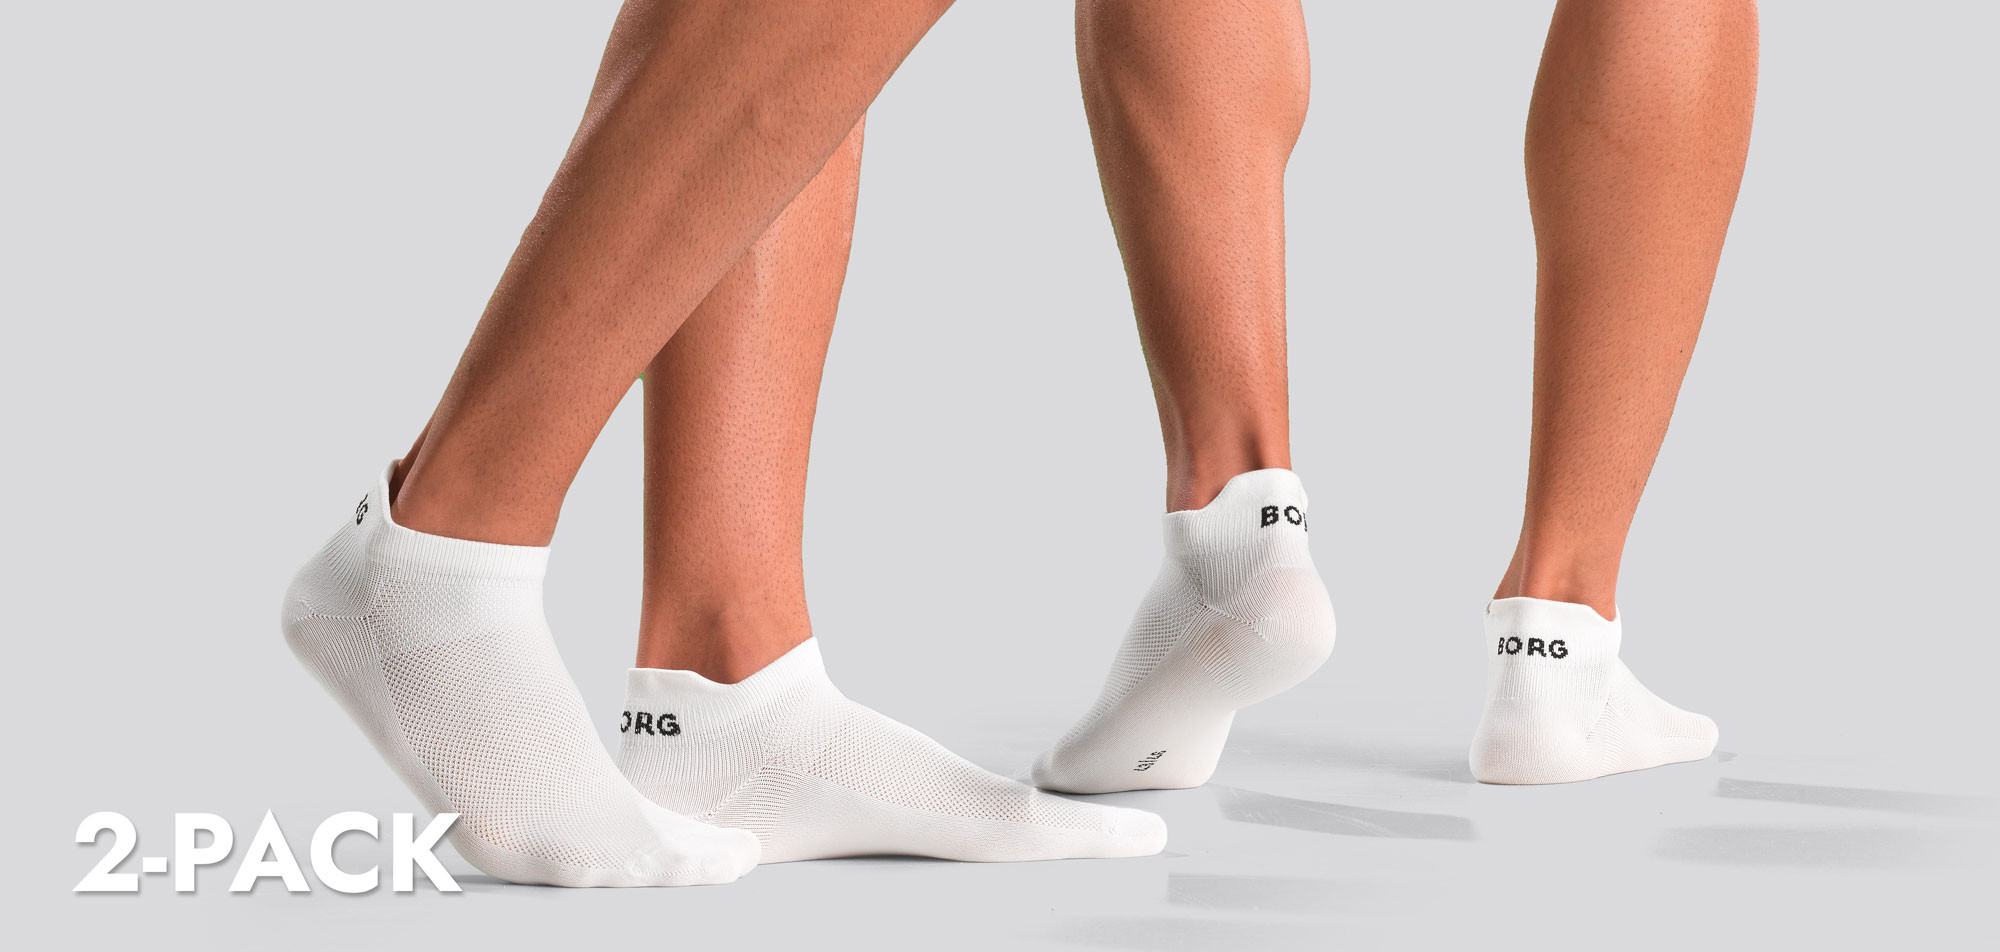 Bjorn Borg Performance Steps Socks 2-Pack 1391, color Nee